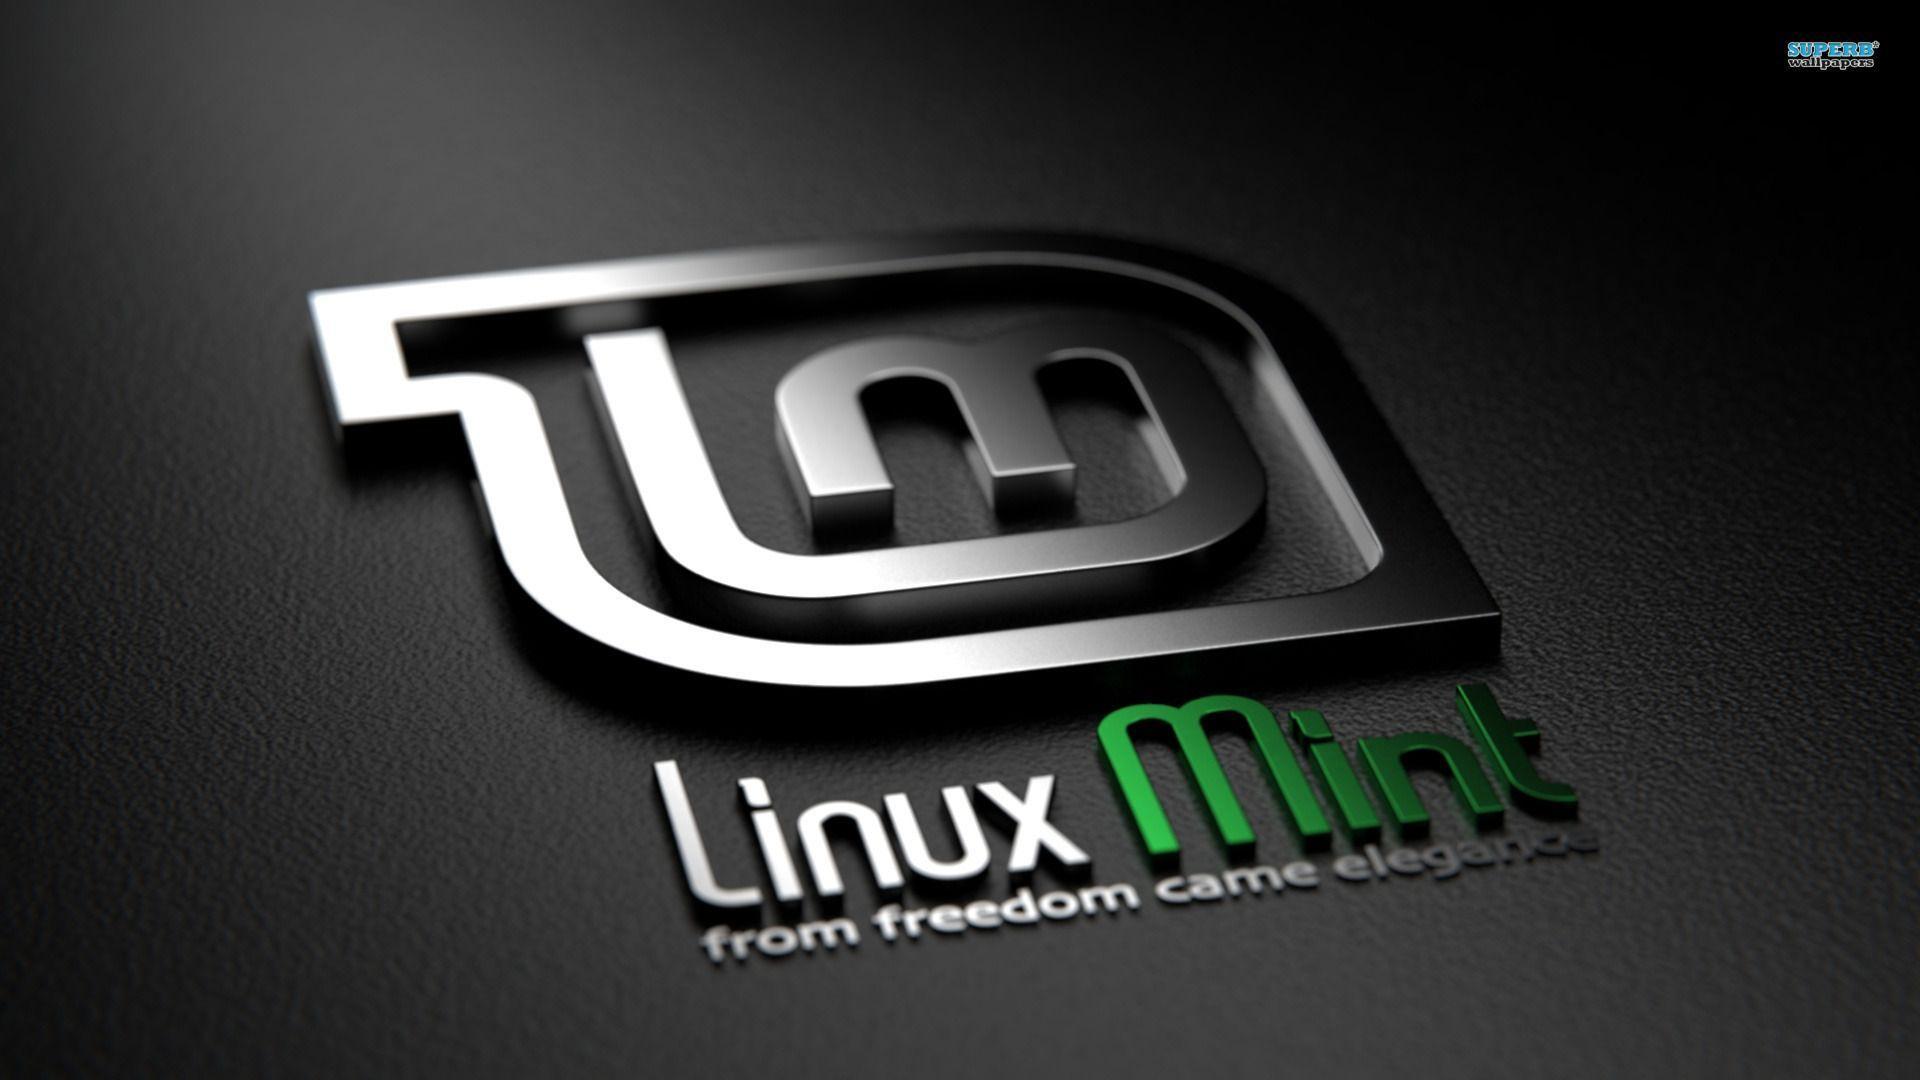 Fondos de pantalla de Linux Mint